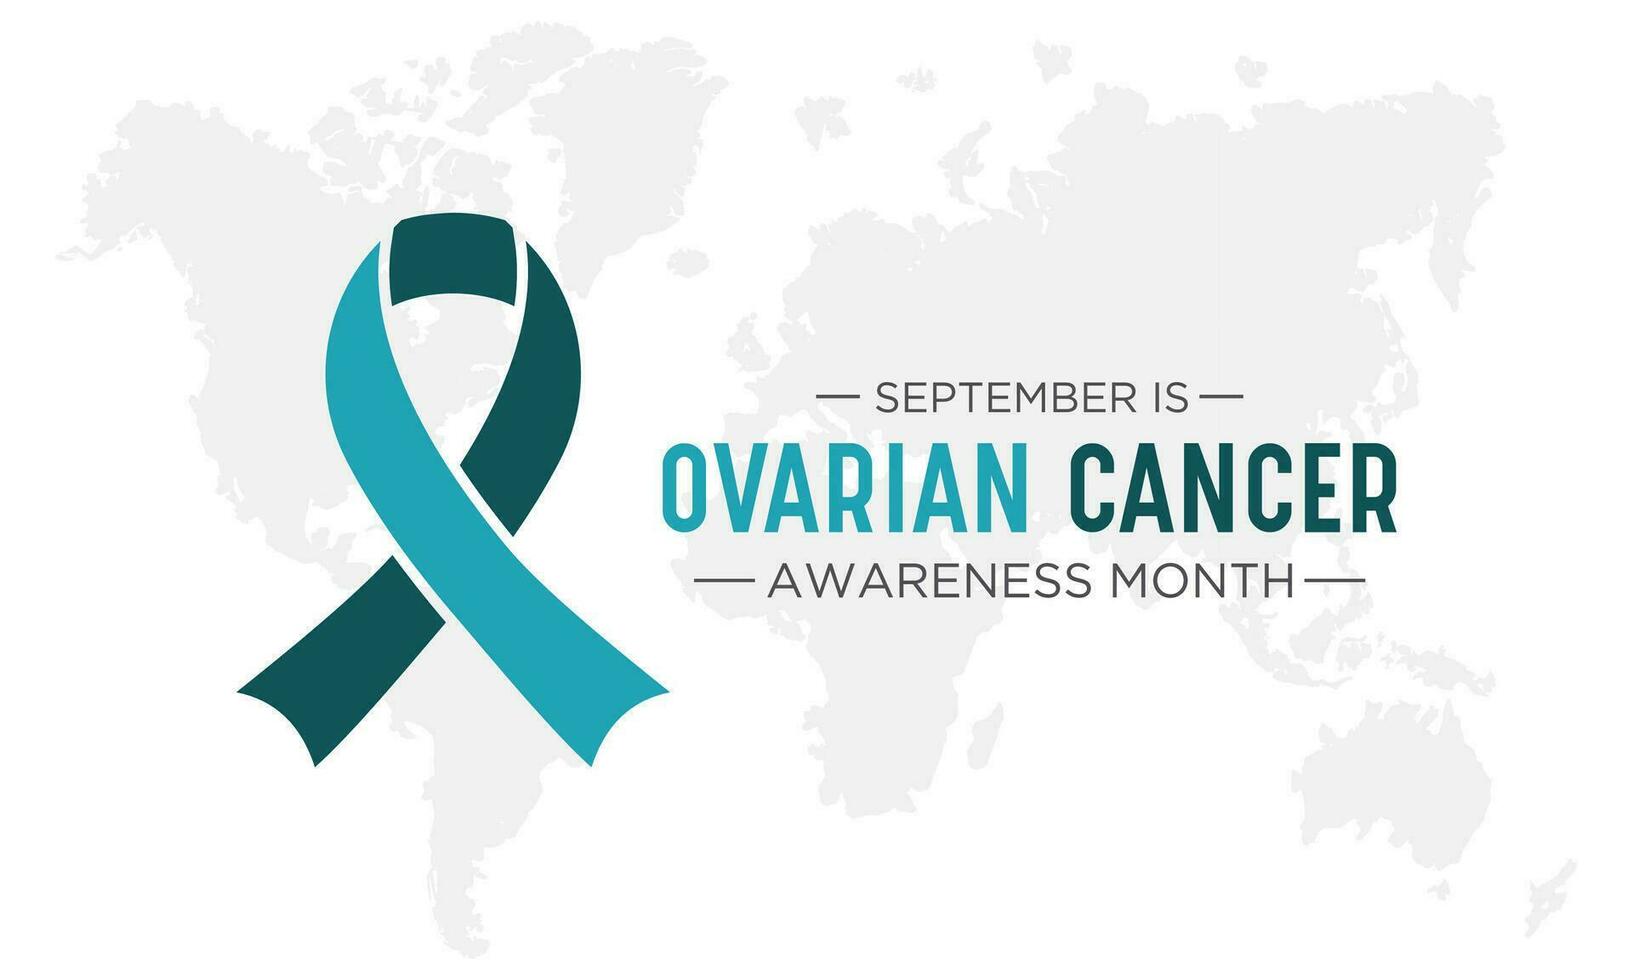 Eierstock Krebs Bewusstsein Monat ist beobachtete jeder Jahr im September. September ist Eierstock Krebs Bewusstsein Monat. Vektor Vorlage zum Banner, Gruß Karte, Poster mit Hintergrund. Vektor Illustration.